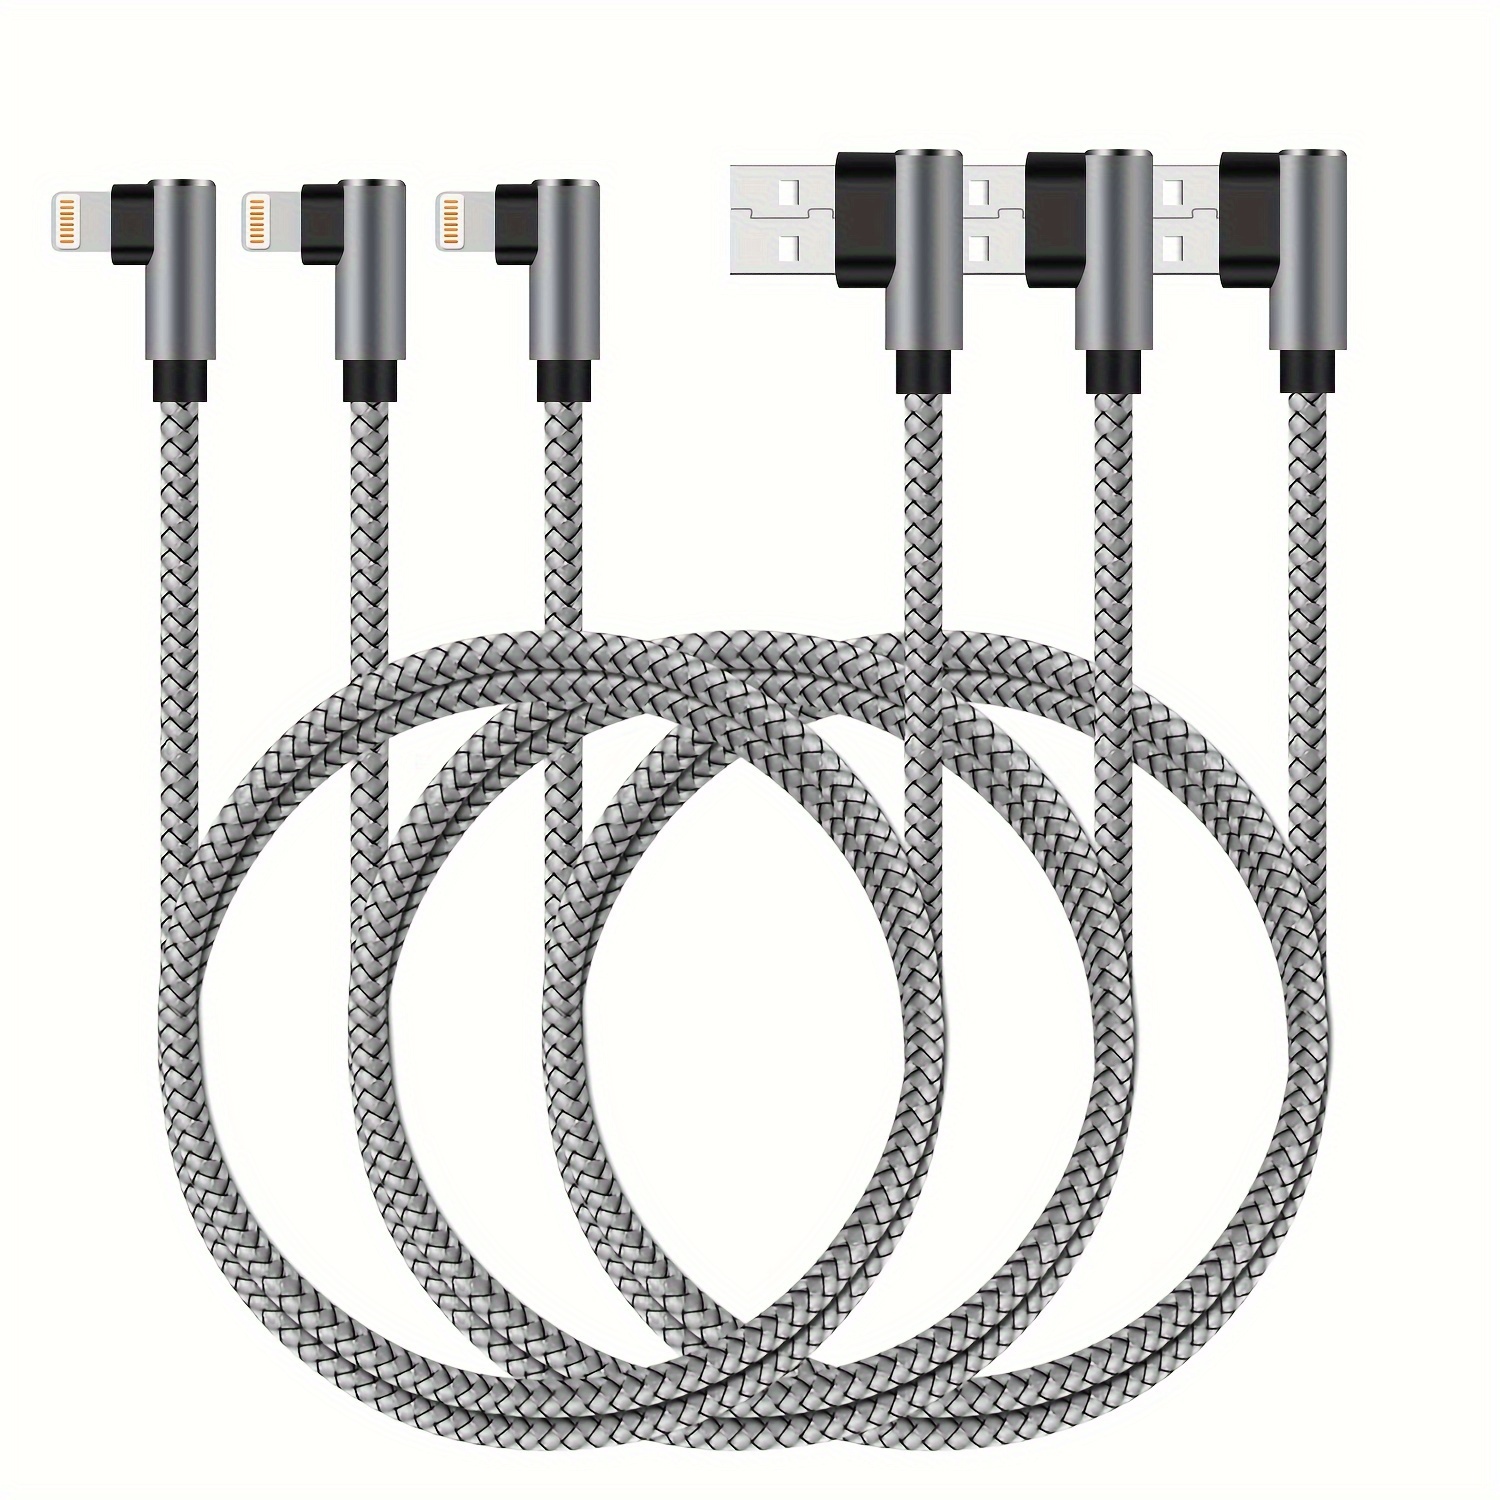 

Lot De 3 Câbles De Charge Coudés 90 Degrés De 6 Pieds, Câble De Charge En Nylon Tressé, Compatible Avec IPhone/iPod/iPad (gris, 6 Pieds)